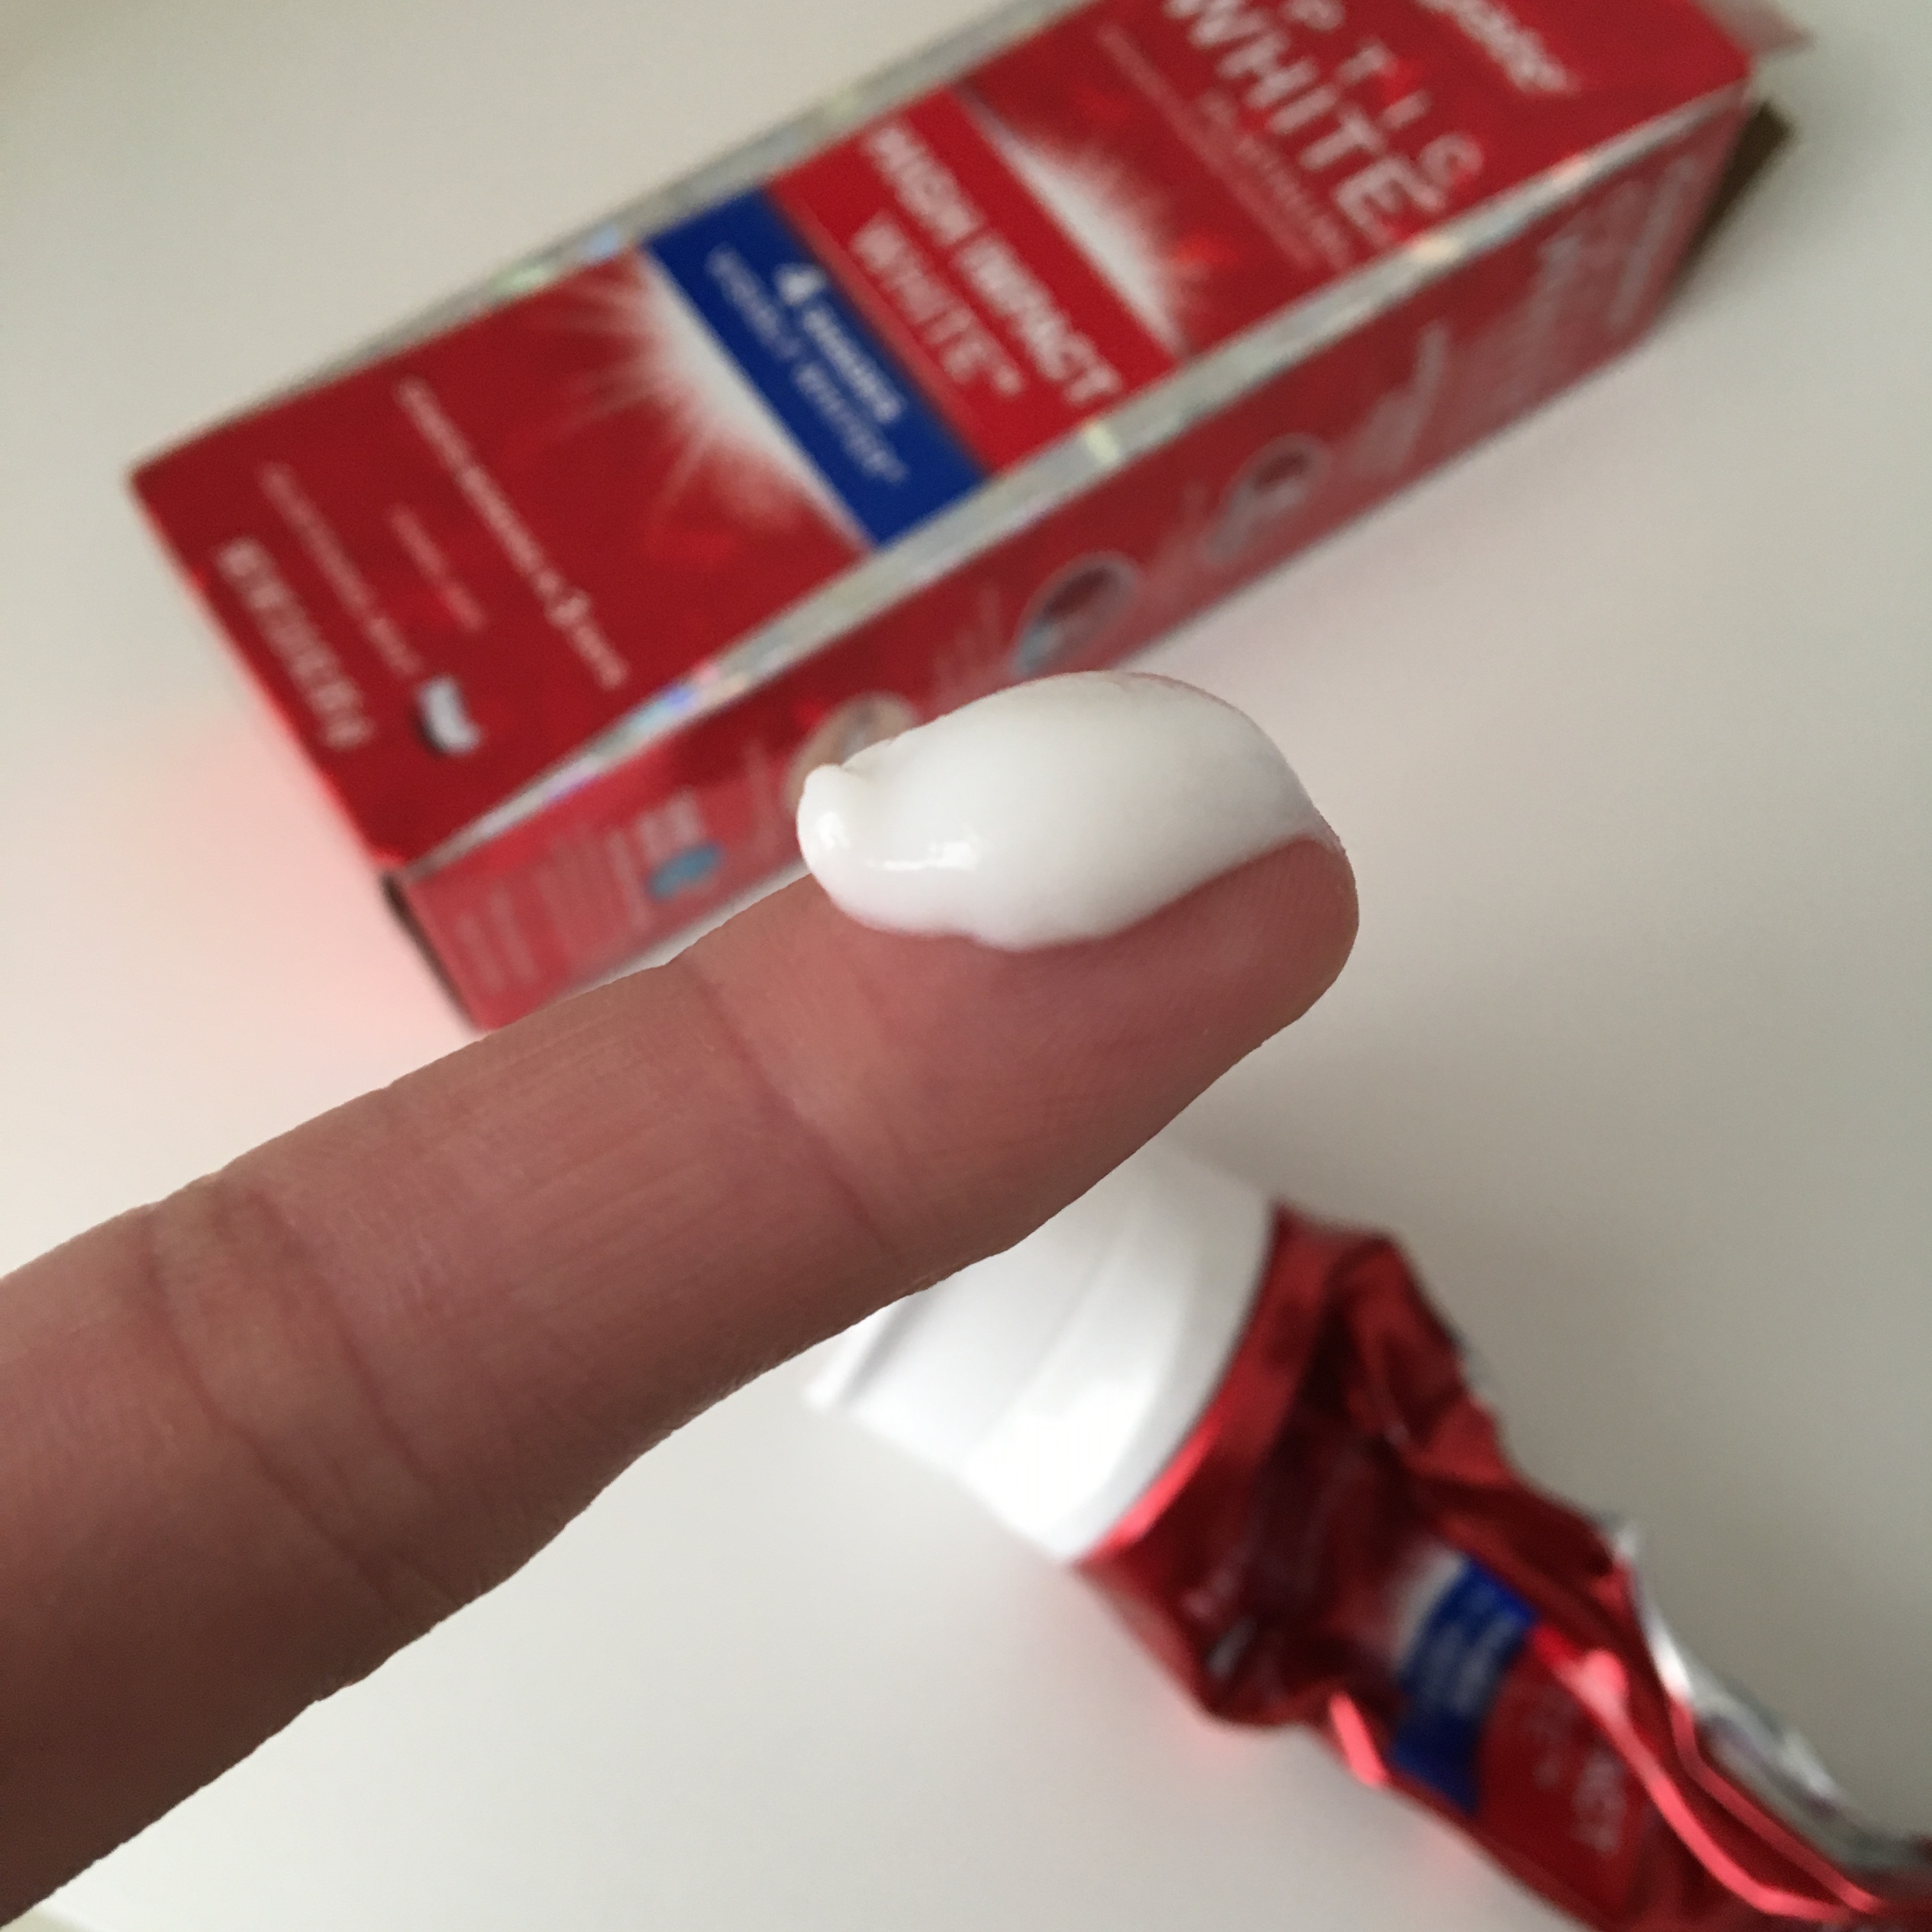 効果アリ!歯磨きで歯を白く!コルゲートの歯磨き粉 オプティックホワイト「ハイインパクト」使ってみた！